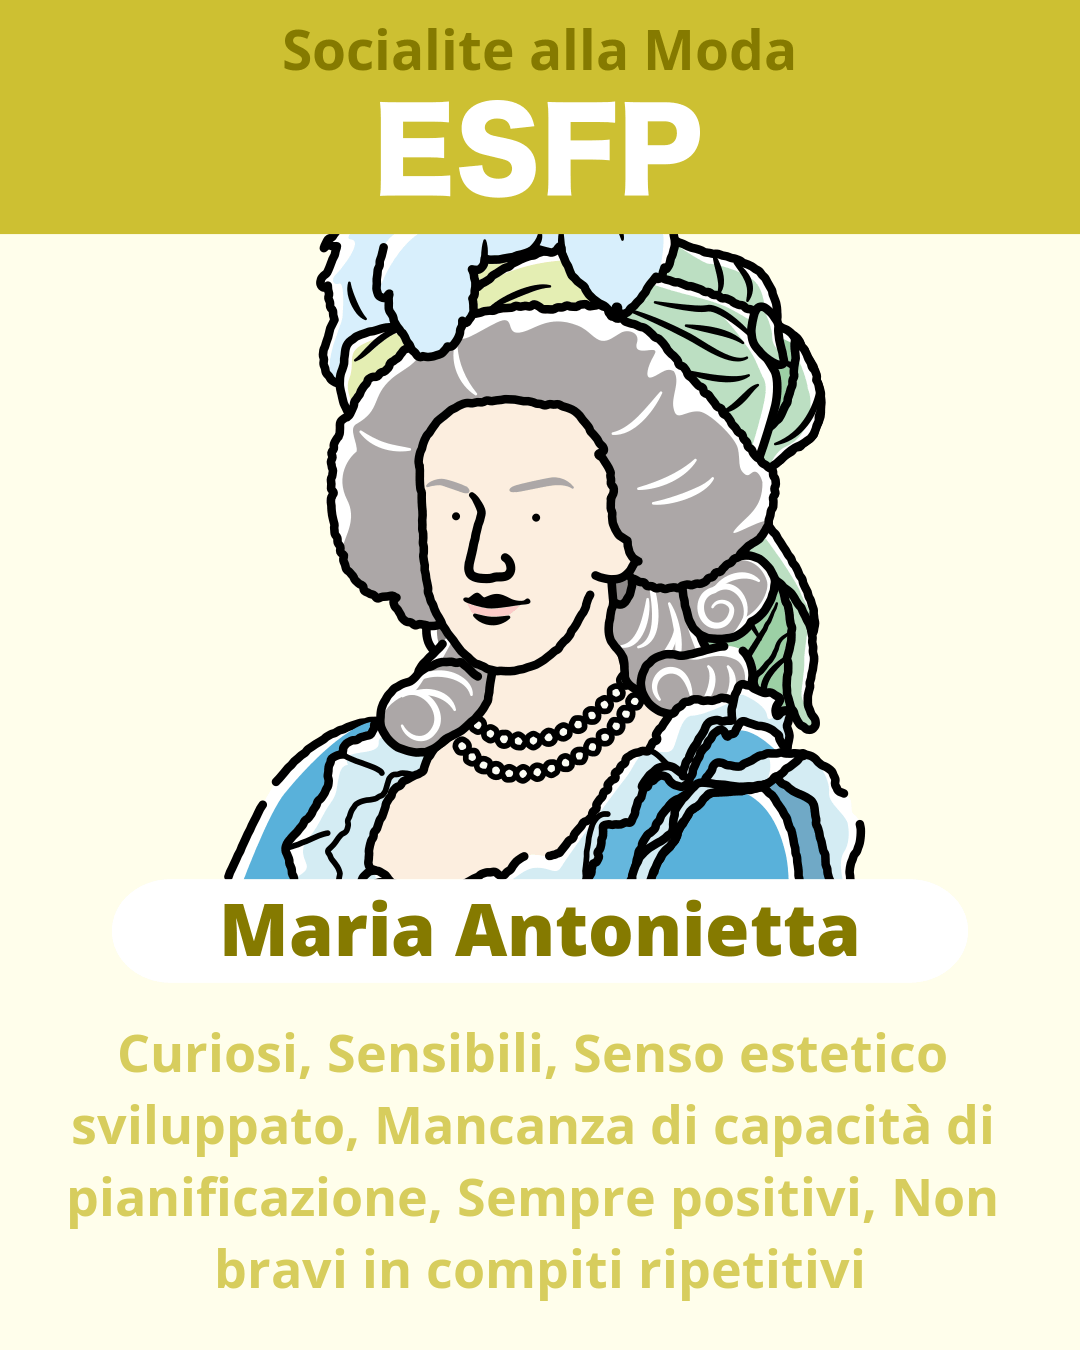 Maria Antonietta - ESFP